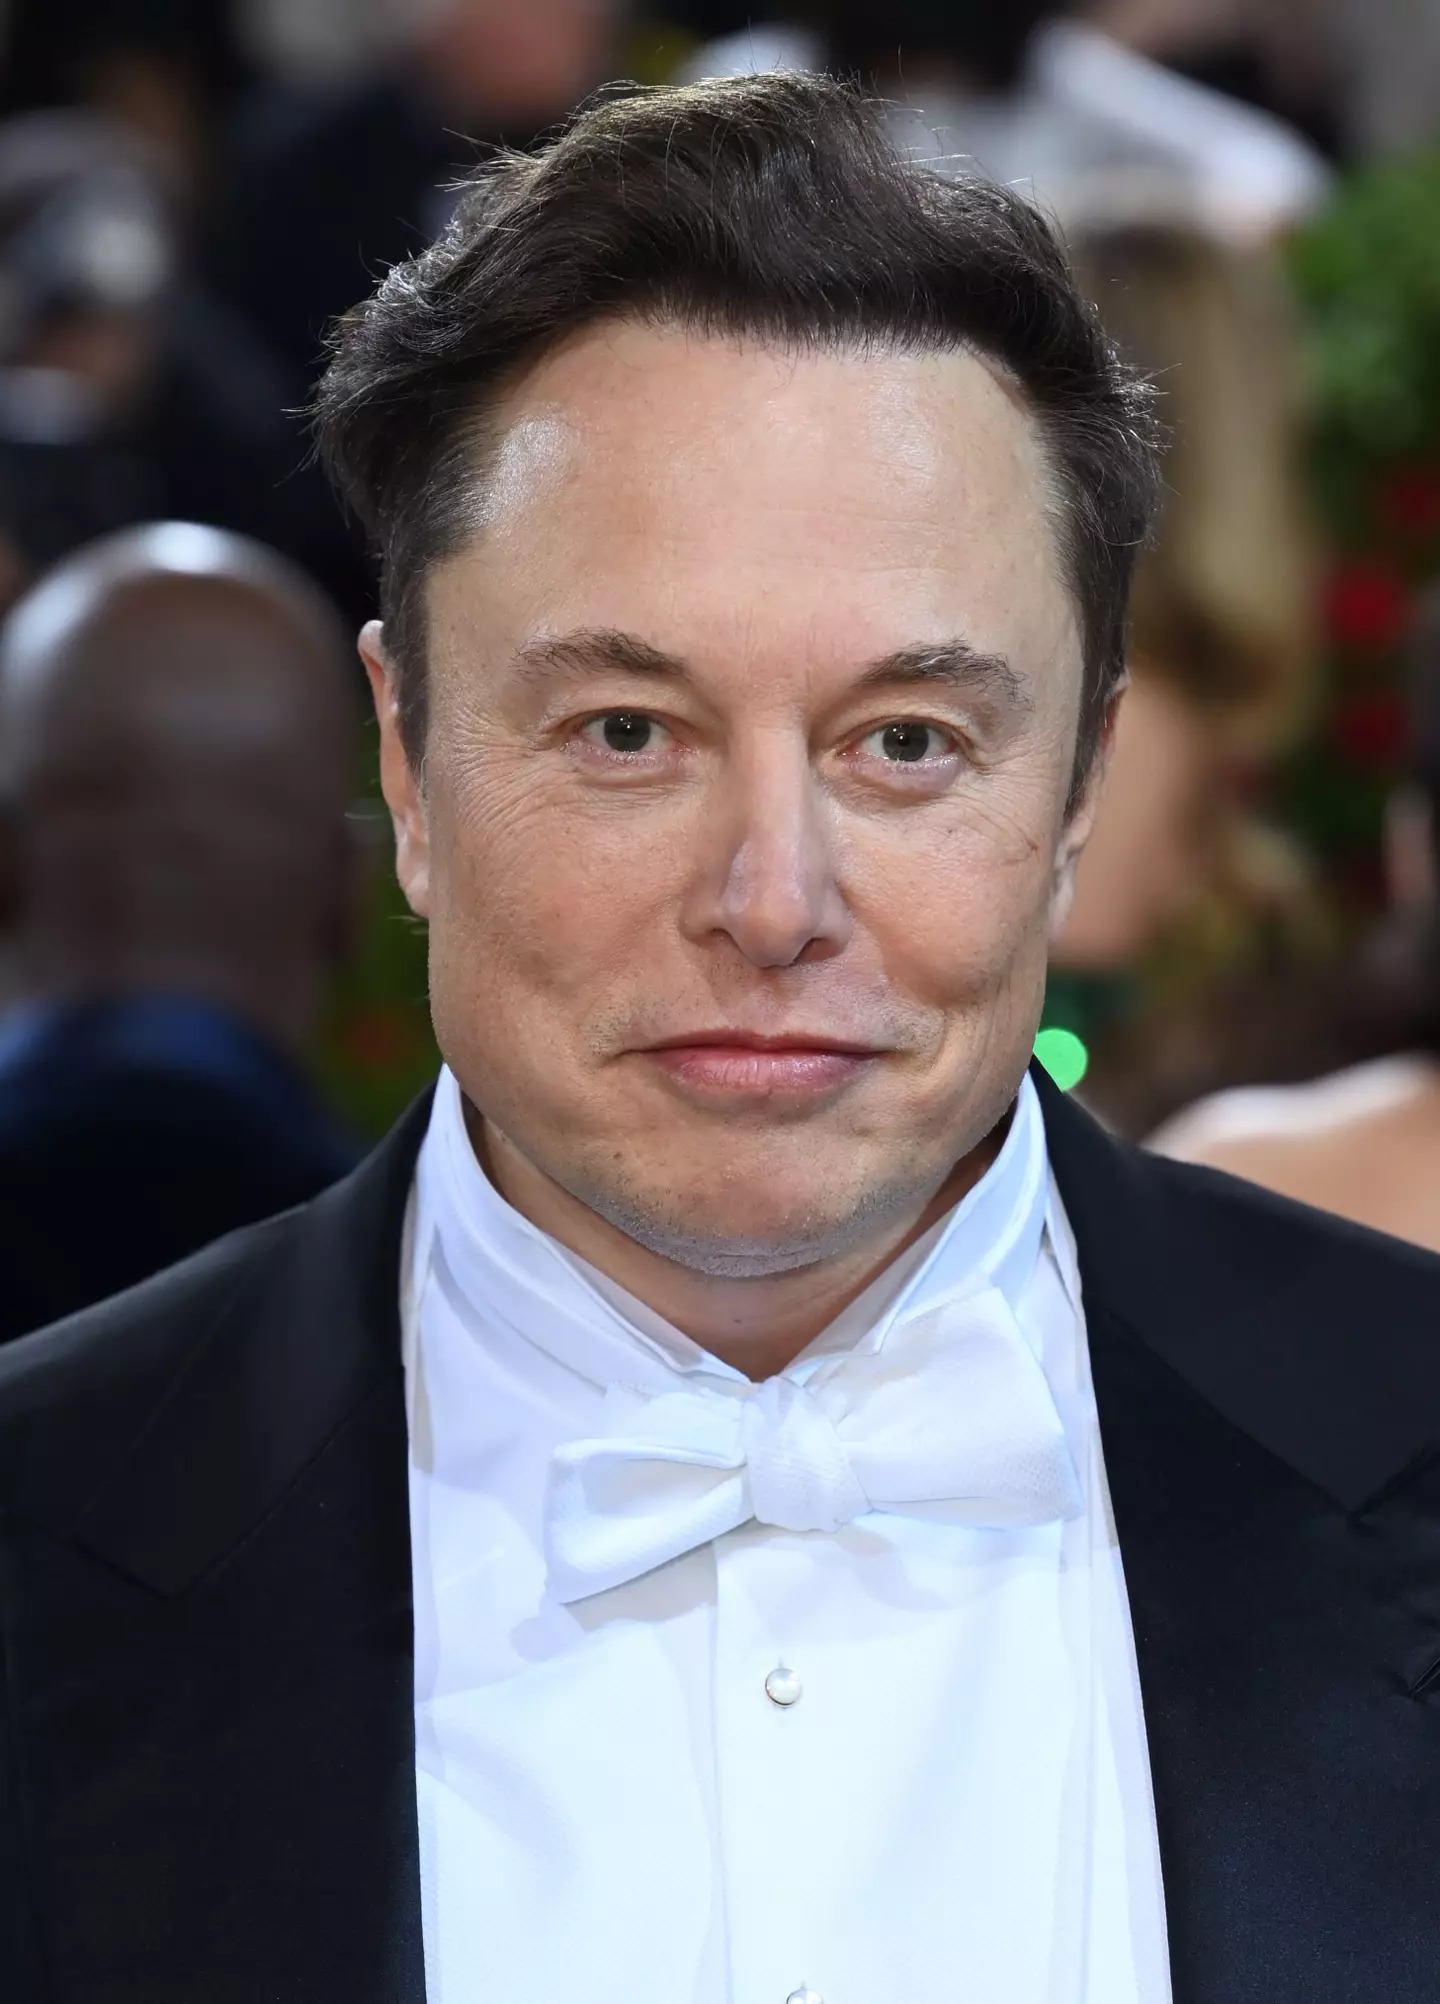 Errol Musk is also dad to Tesla CEO Elon.